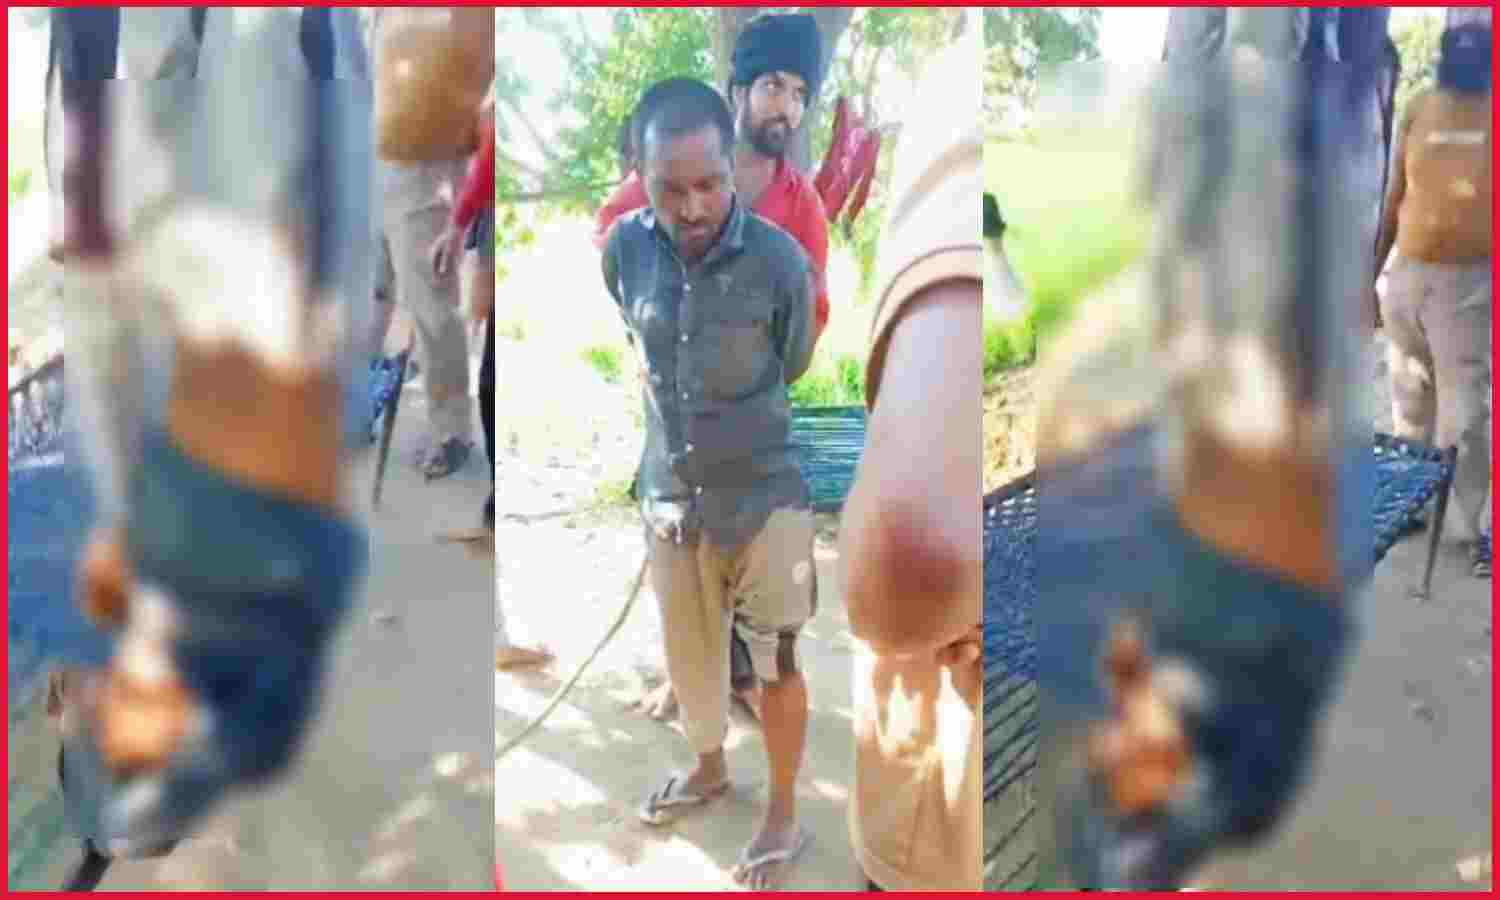 Lakhimpur News : मंदबुद्धि युवक को चोर समझकर उल्टा लटकाया, बेरहमी से की पिटाई, वीडियो वायरल होने पर 3 लोग गिरफ्तार